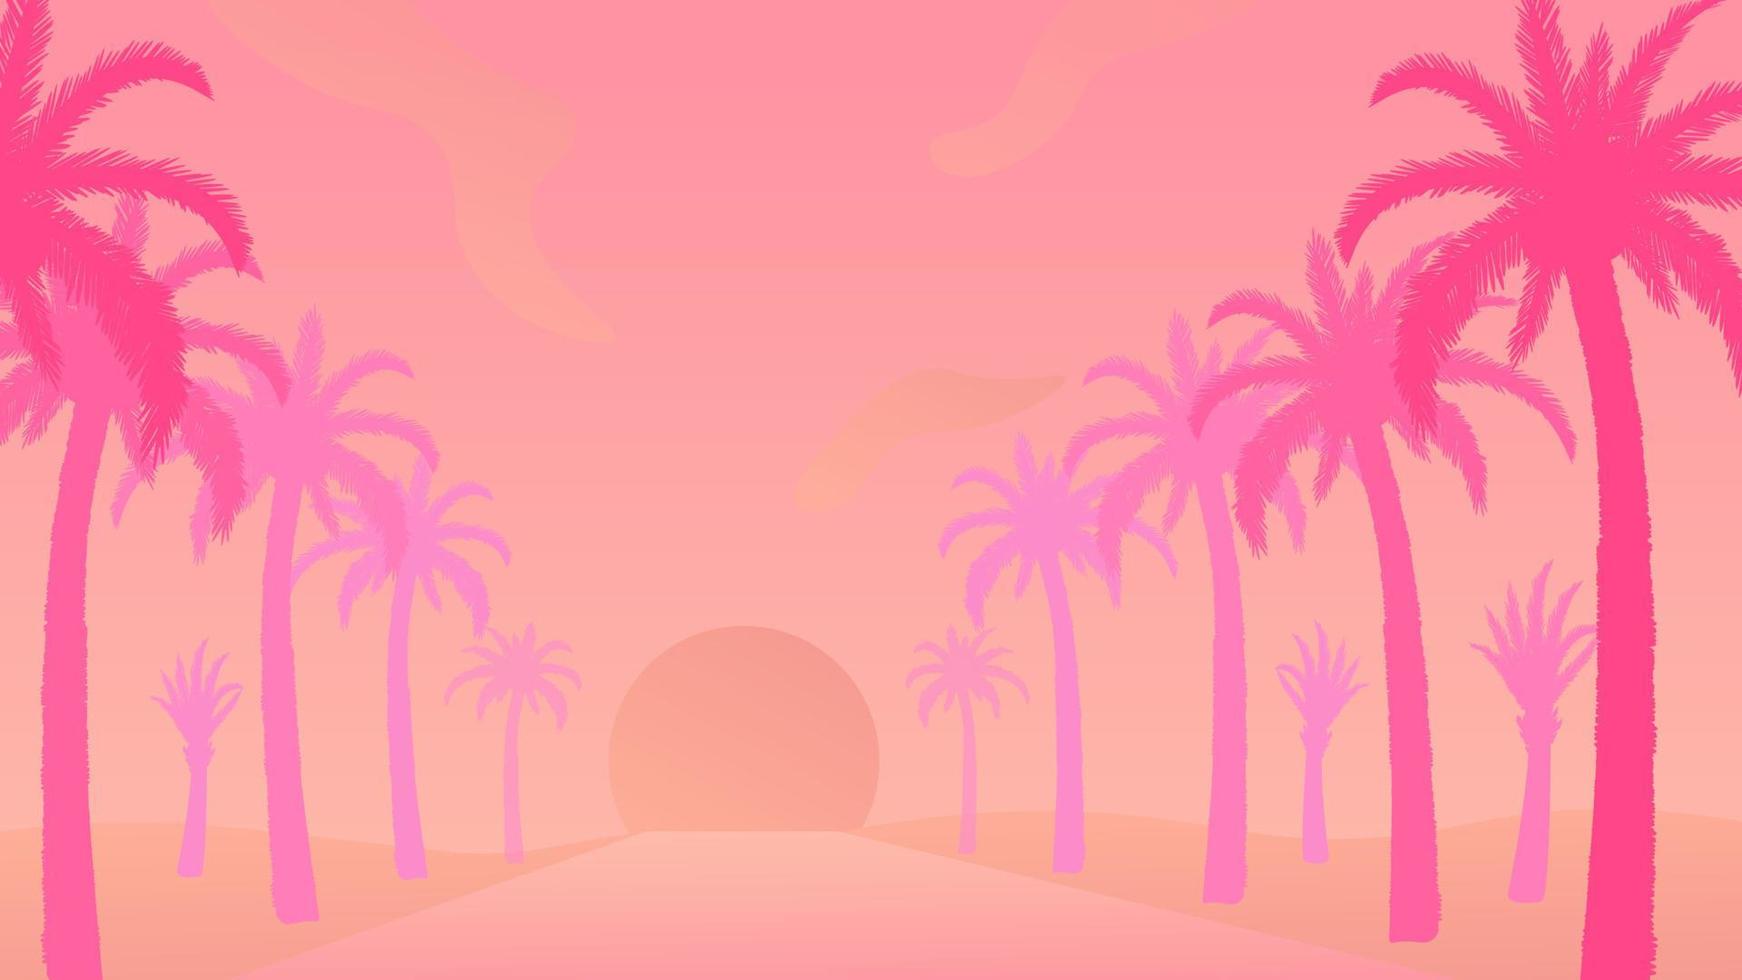 coucher de soleil tropical avec des palmiers debout en cru. belle île avec illustration vectorielle de plantes silhouette. vecteur